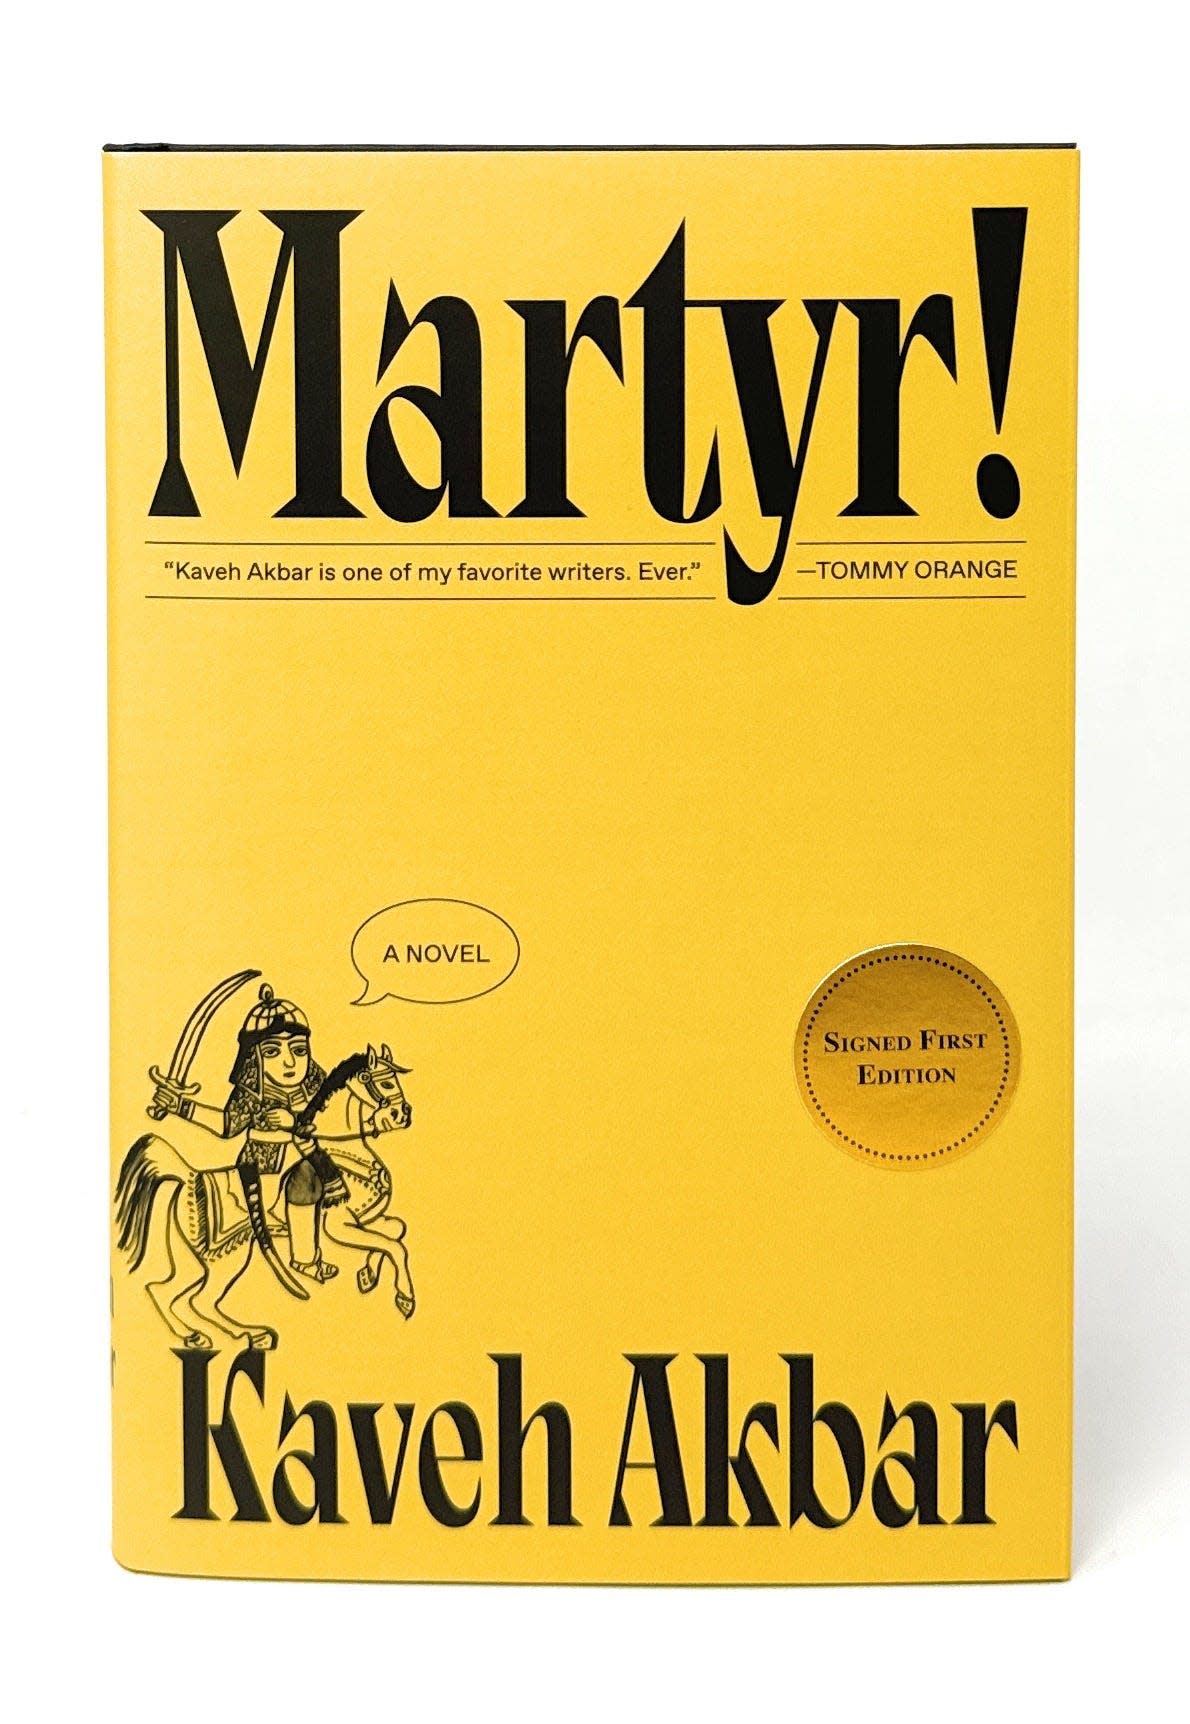 "Martyr!" by Kaveh Akbar